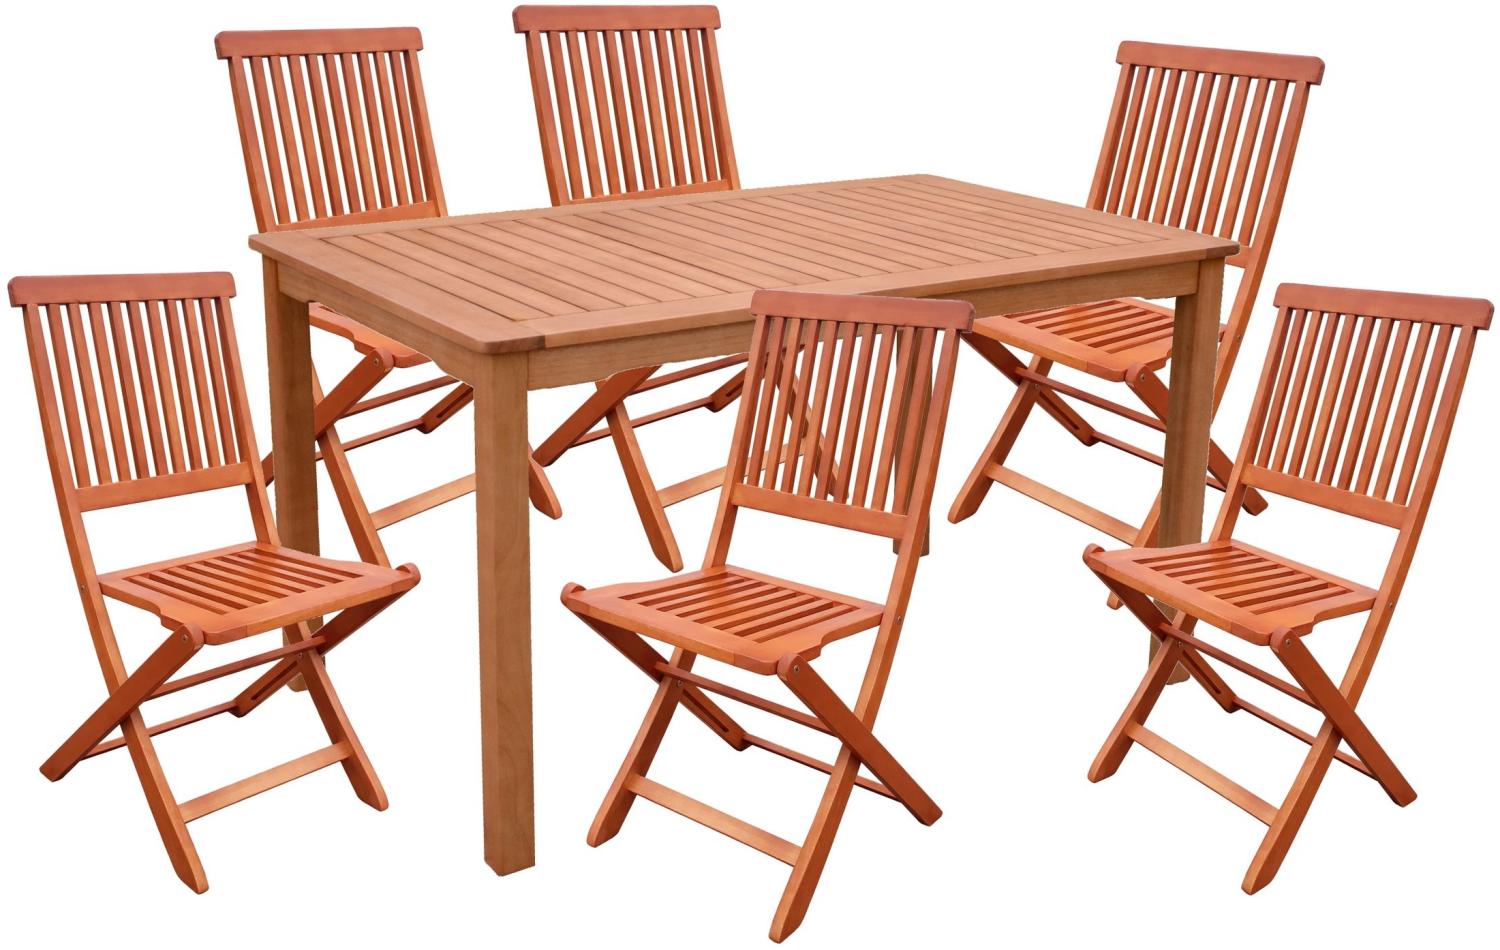 7tlg. Holz Tischgruppe Gartenmöbel Gartentisch Stuhl Garten Hochlehner Tisch Bild 1